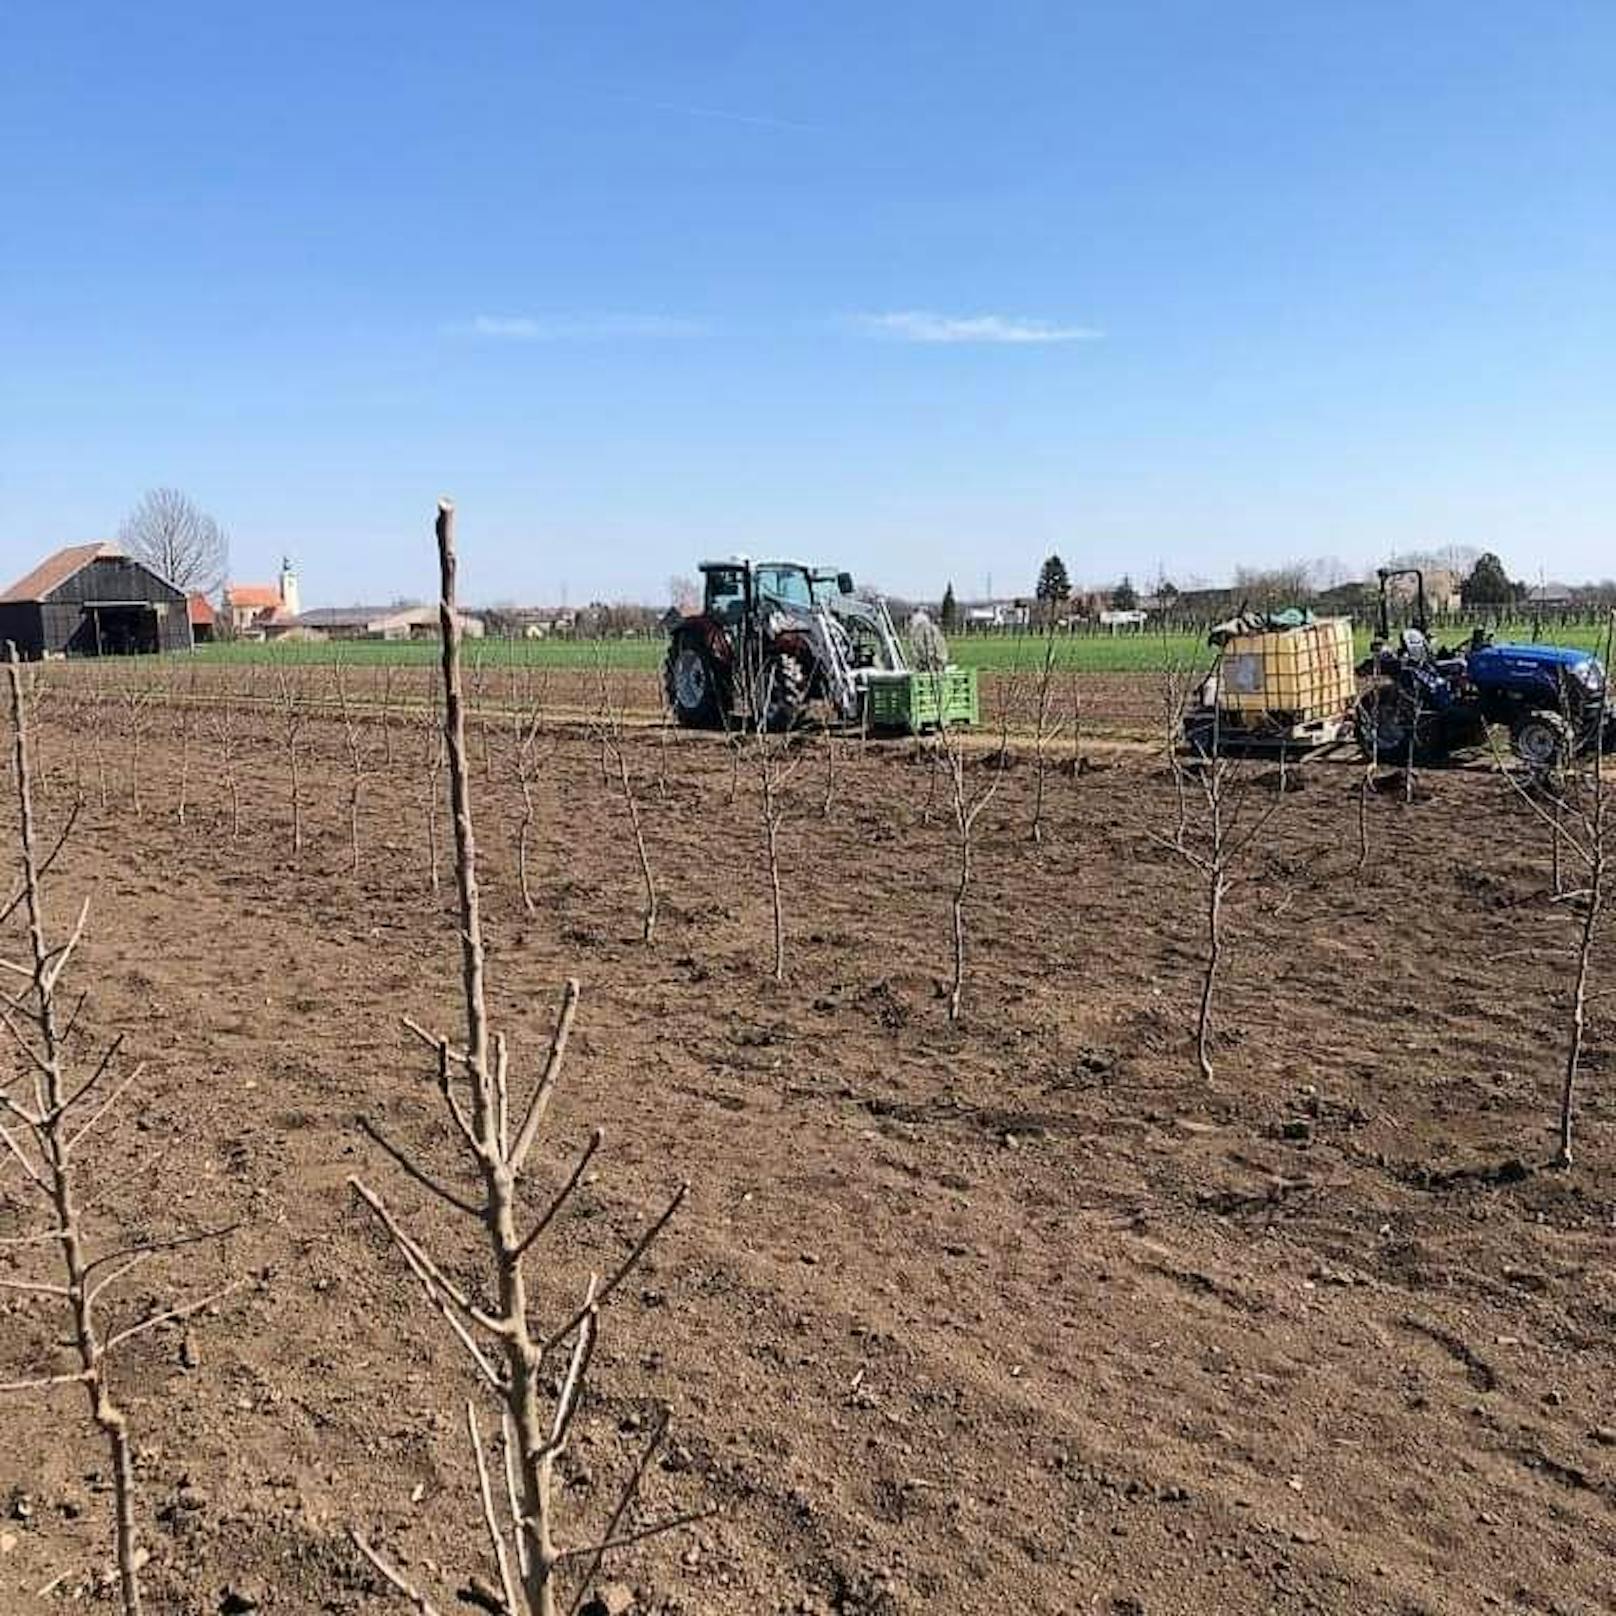 Obstbande stahl 240 Apfelbäume im Weinviertel